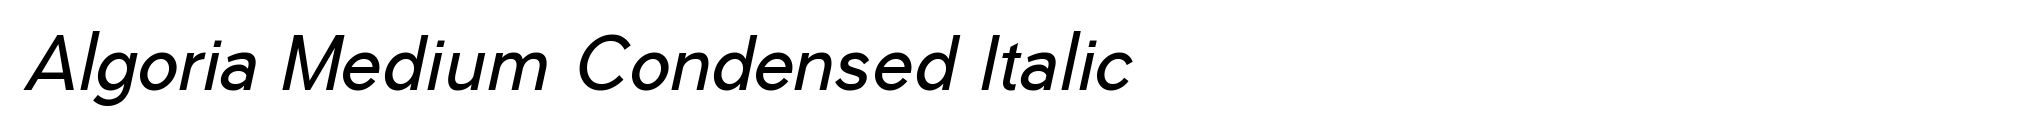 Algoria Medium Condensed Italic image